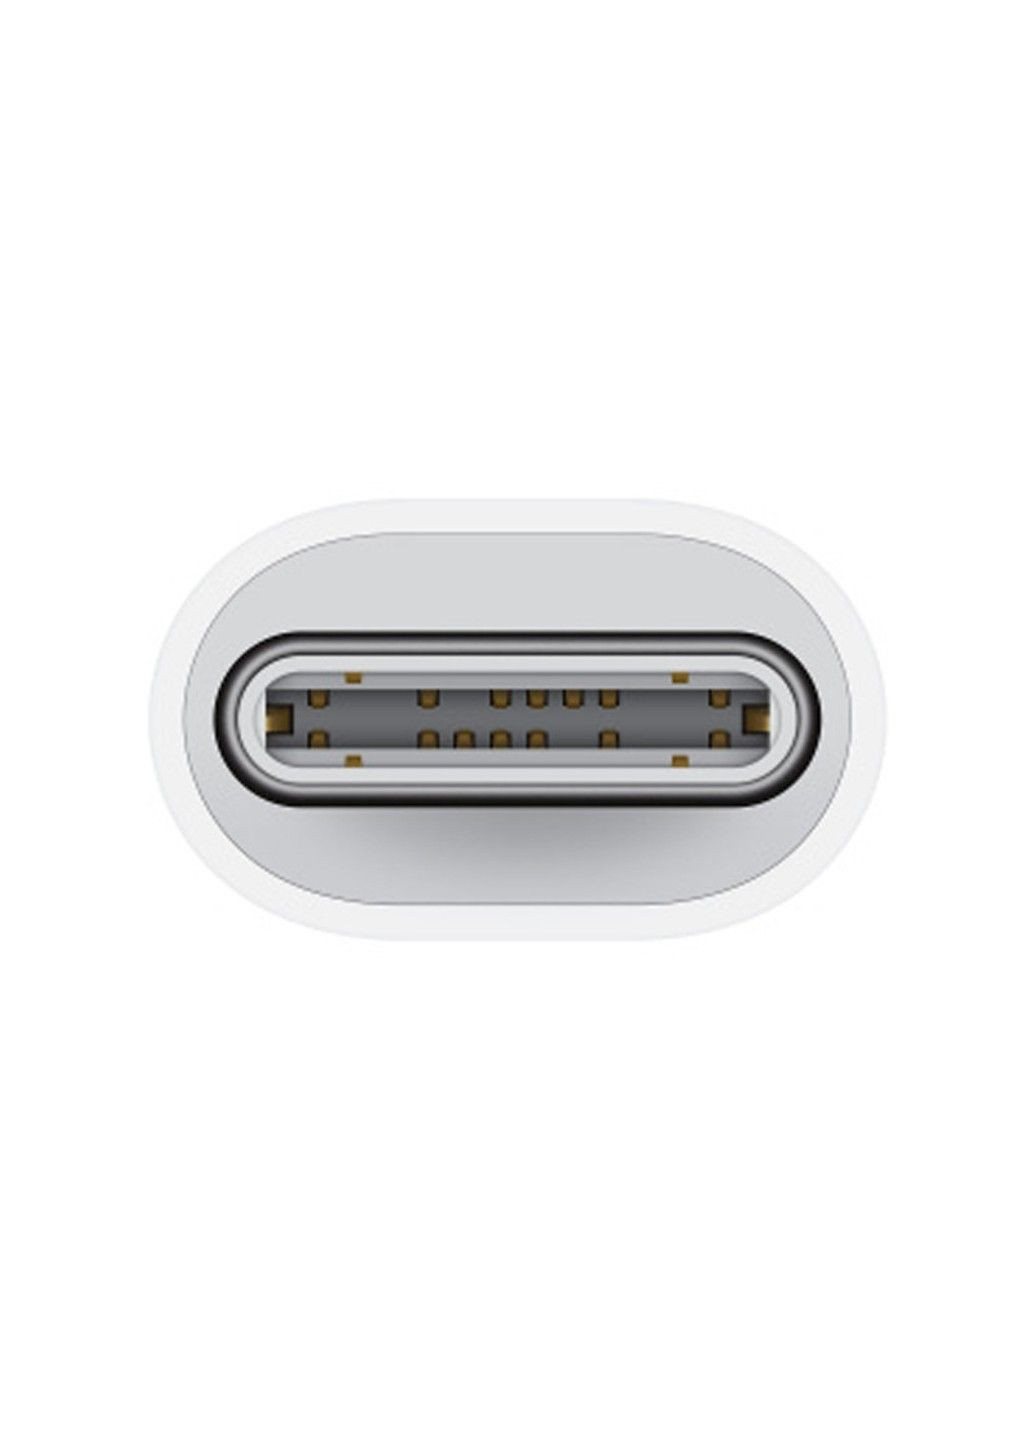 Переходник USB-C to Lightning Adapter for Apple (AAA) (box) Brand_A_Class (282960004)